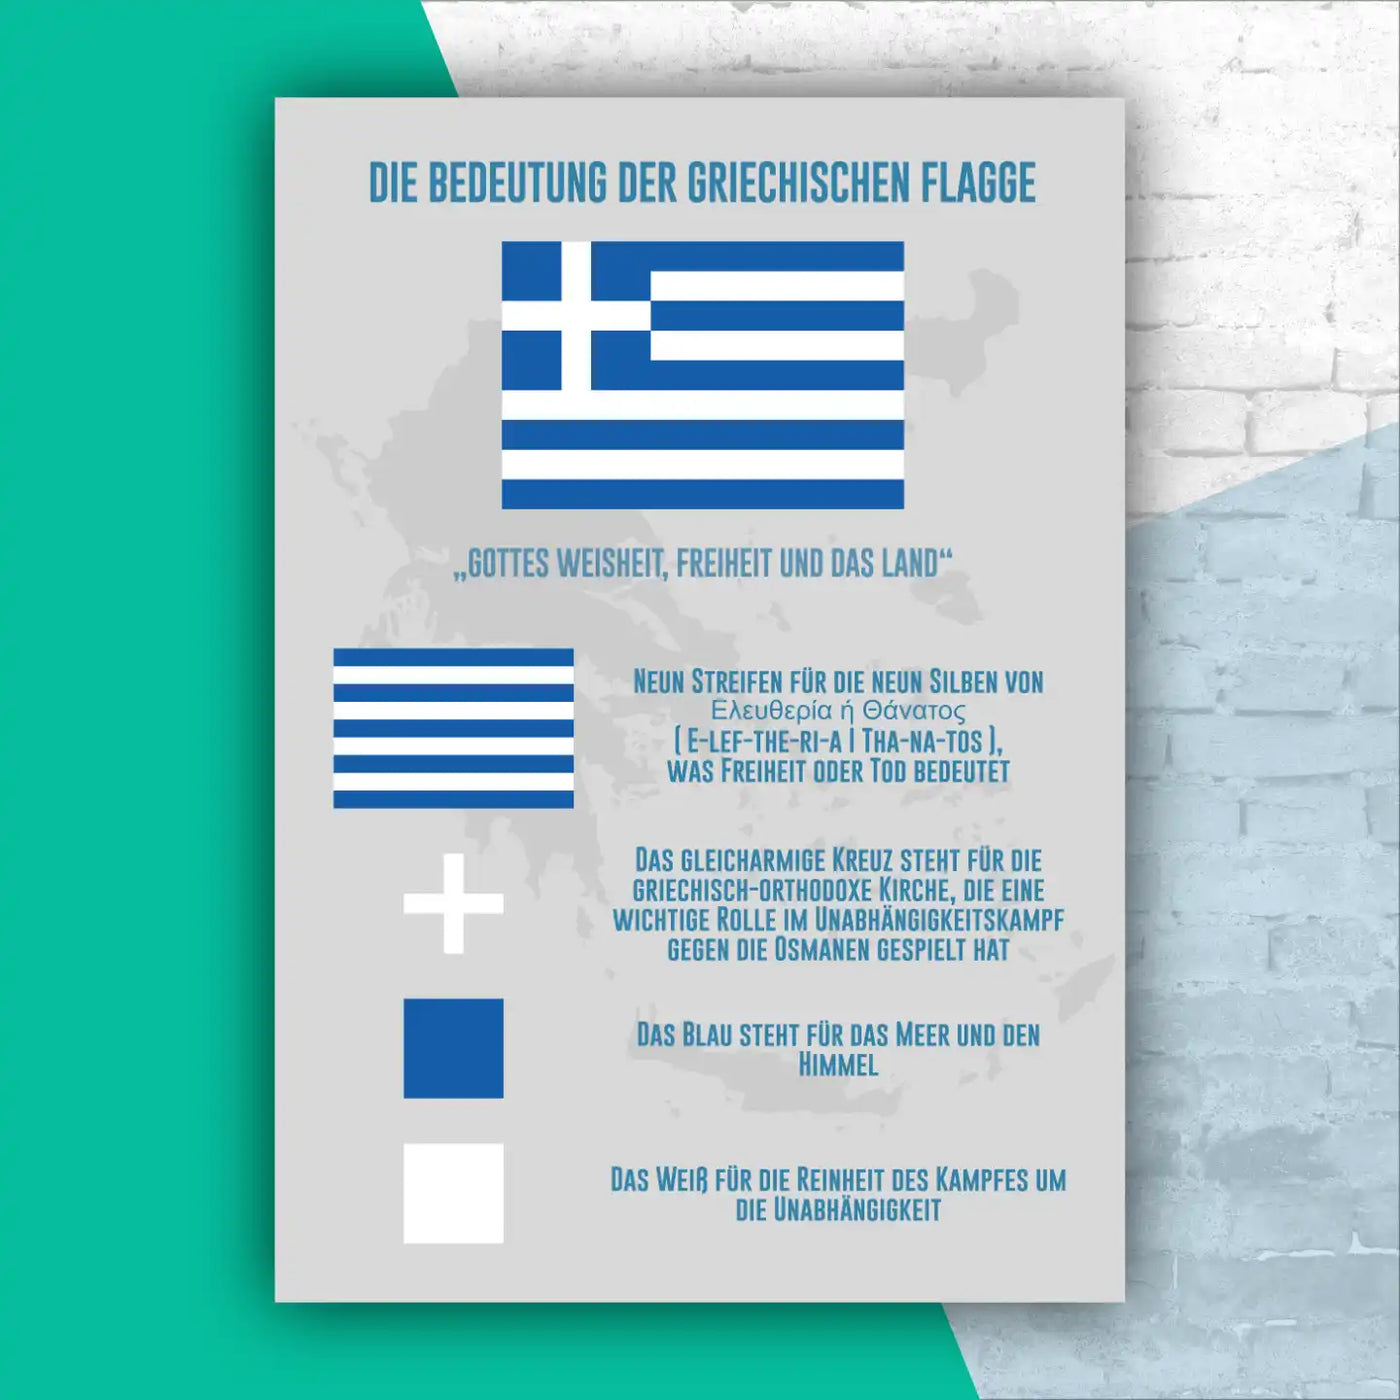 Poster "Die Bedeutung der griechischen Flagge"